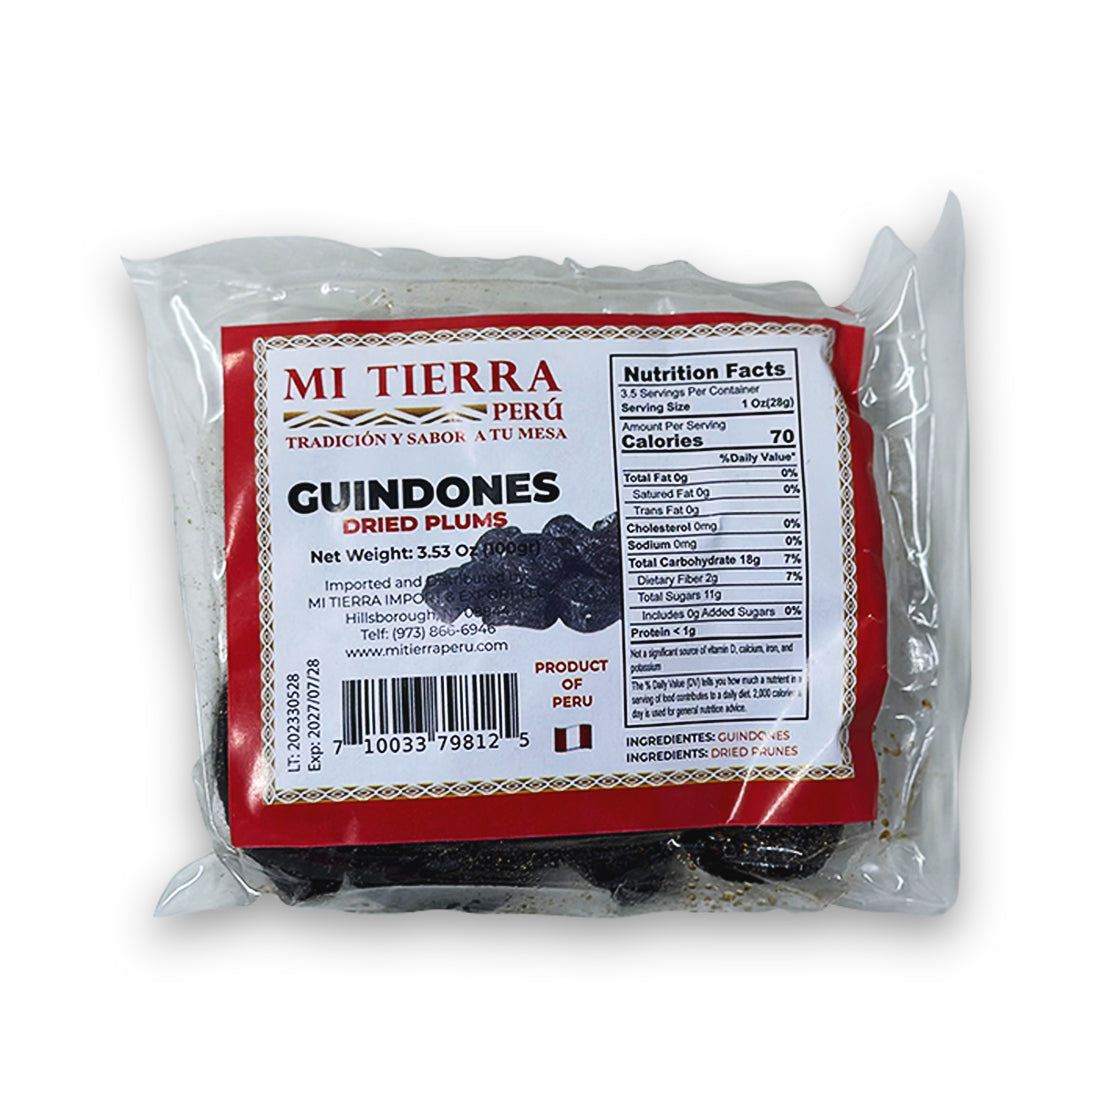 Mi Tierra Perú Guindones Dried Plums x 100gr.